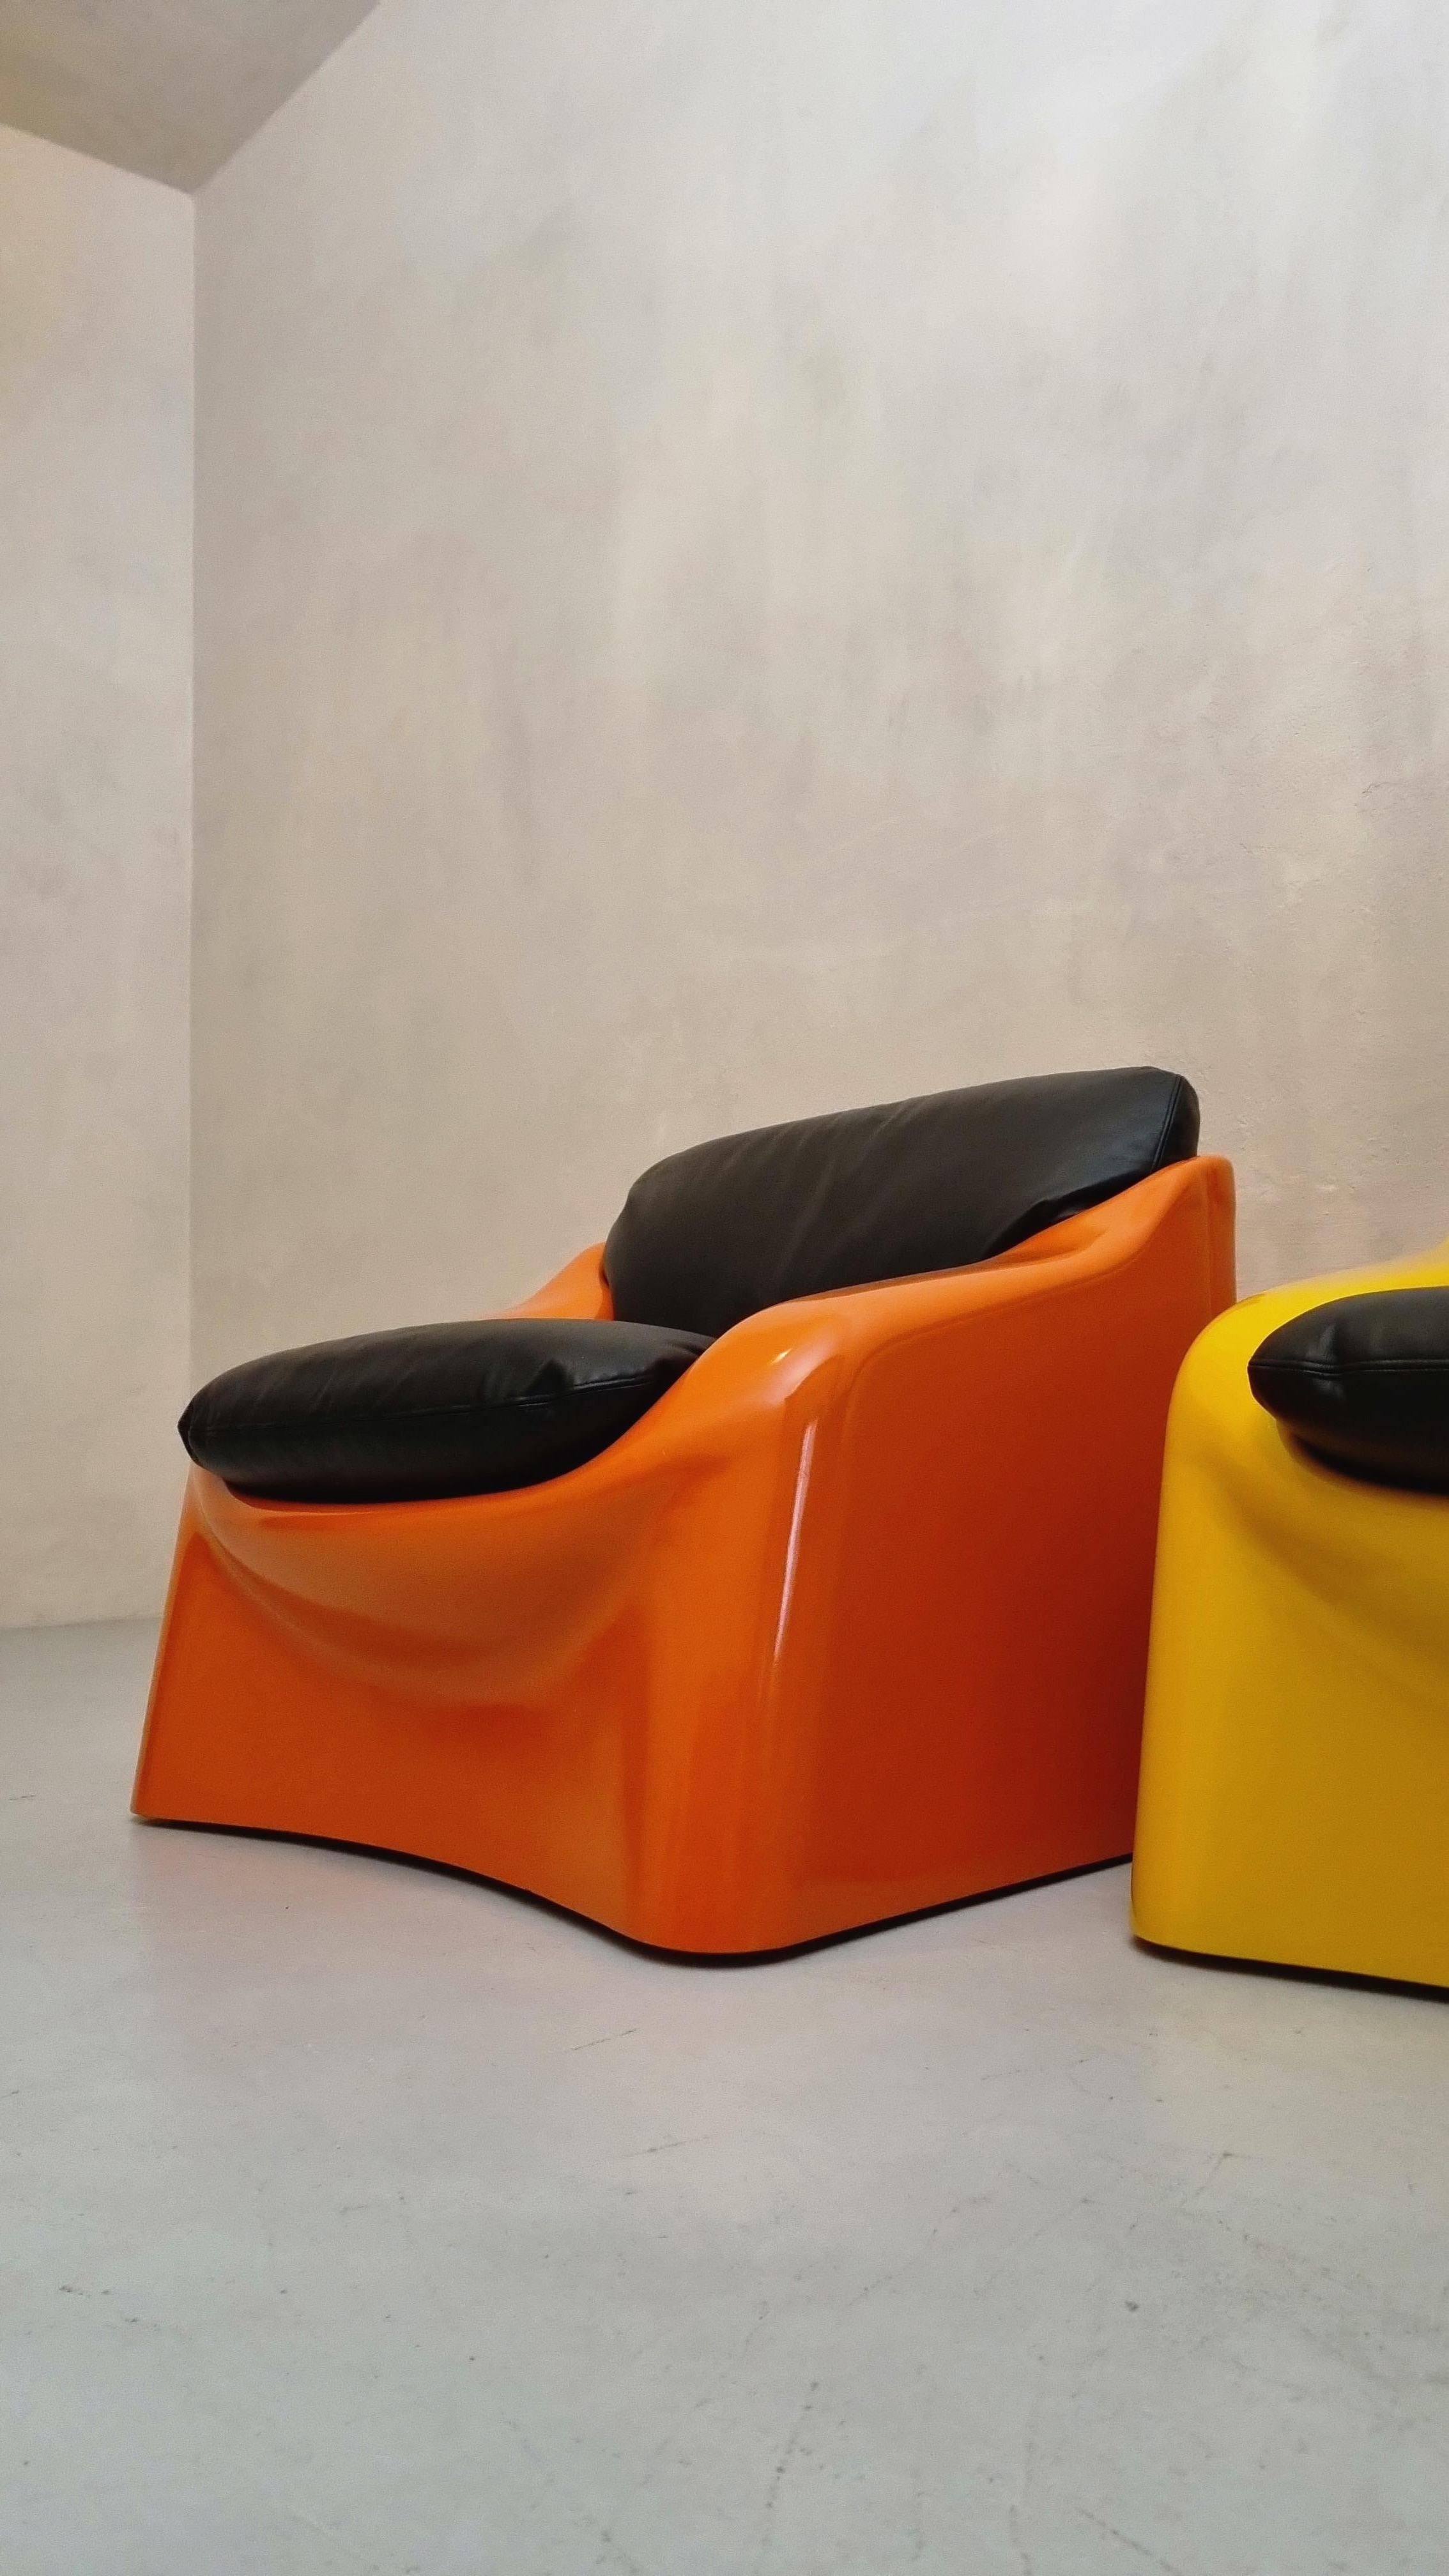 Deux fauteuils mod. Galassia conçu par Ferdinando Buzzi pour Ferruccio Brunati , années 70.
Structure en polystyrène antichoc et revêtements plastiques, sièges en cuir de vachette.
Témoignage valable des premiers essais, du plastique antichoc dans